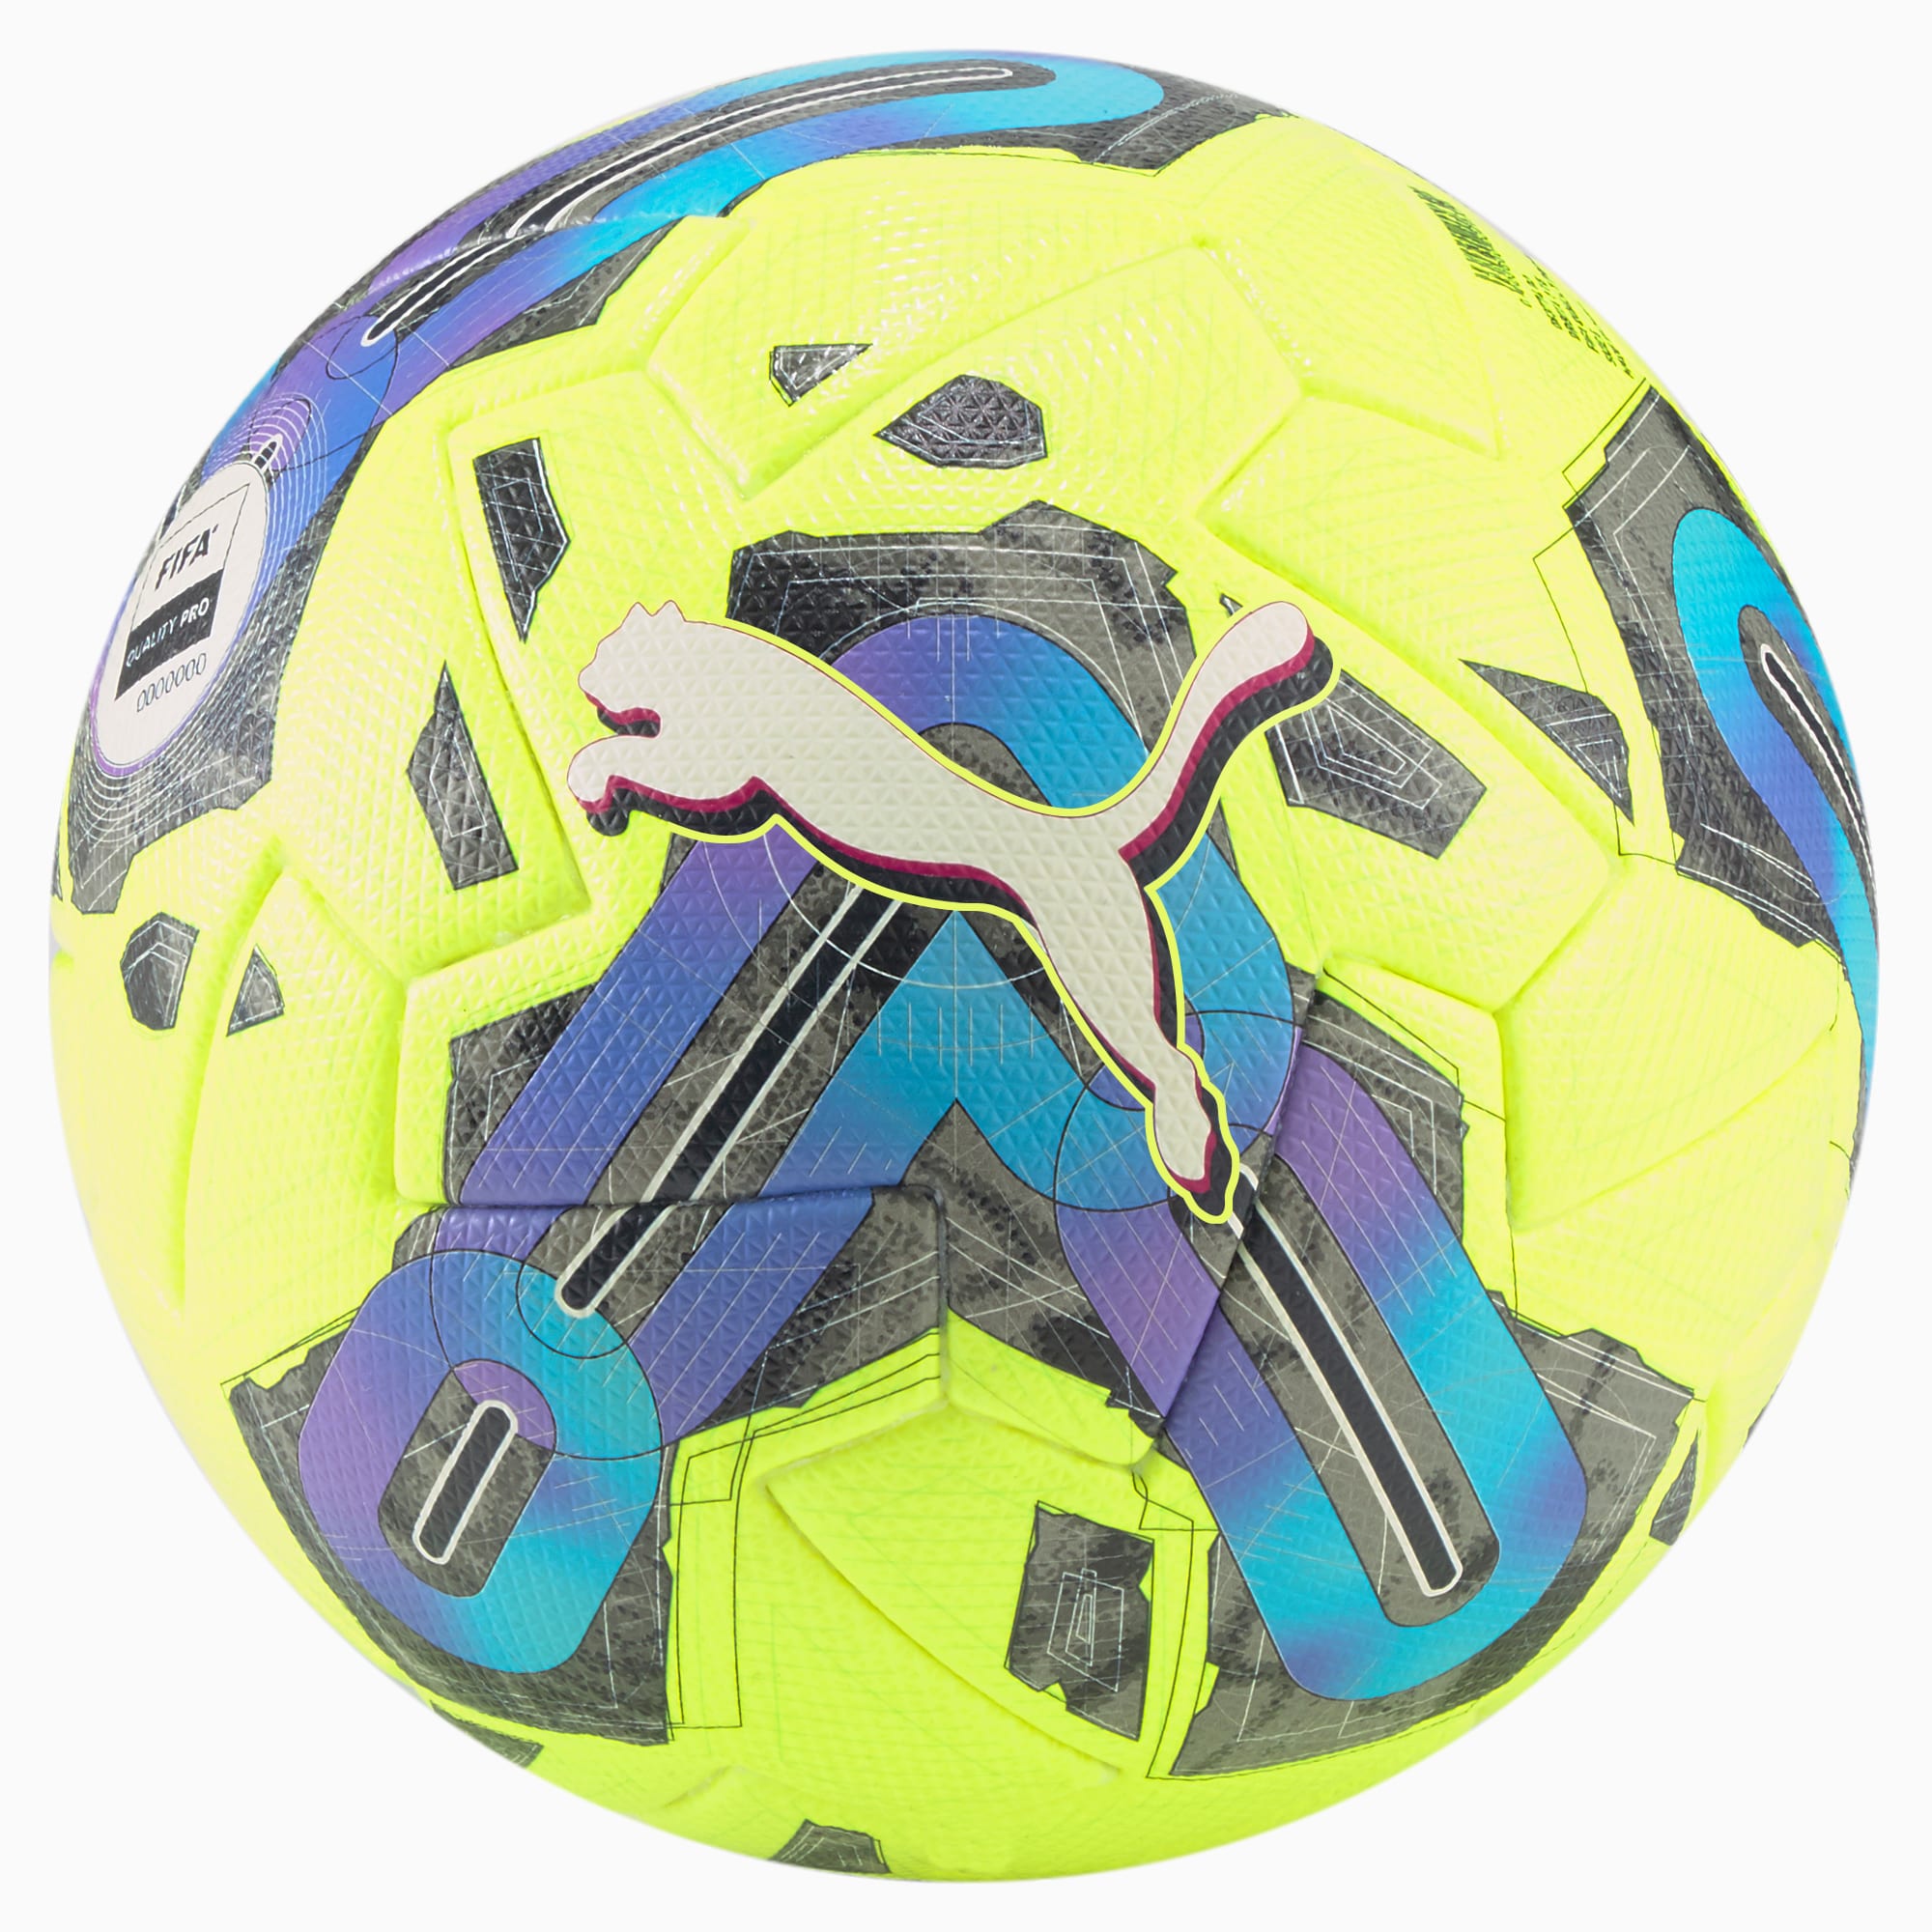 PUMA Orbita 1 TB FQP Fußball Für Damen, Gelb, Größe: 5, Accessoires